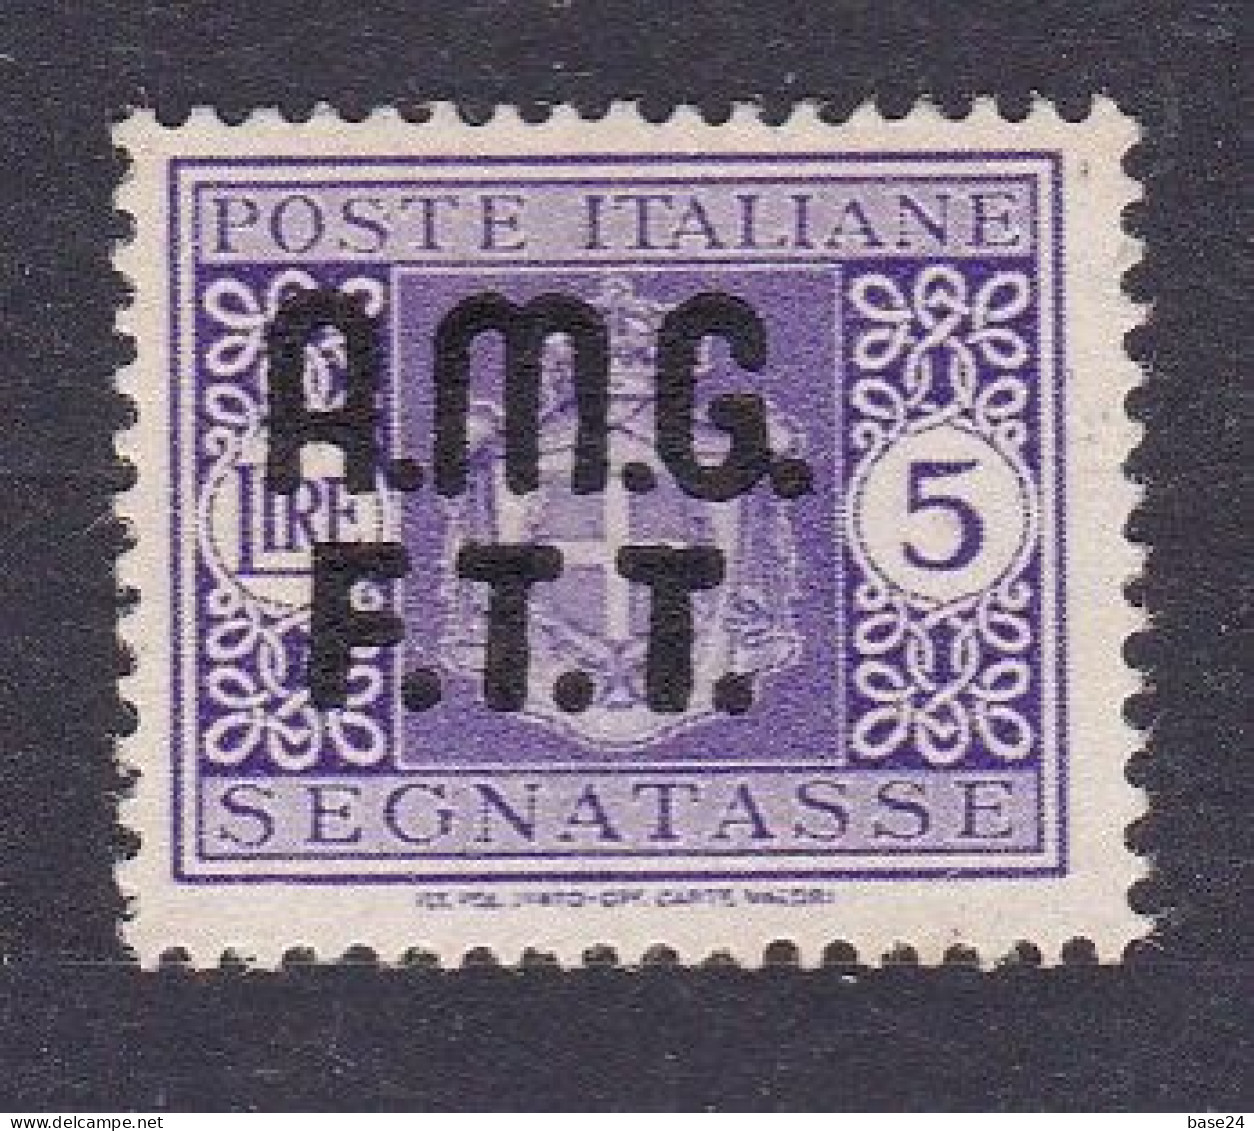 1947 Italia Italy Trieste A SEGNATASSE 4A  POSTAGE DUE 5 Lire Violetto Senza Filigrana MLH* Certif Biondi, Firma A.Diena - Portomarken